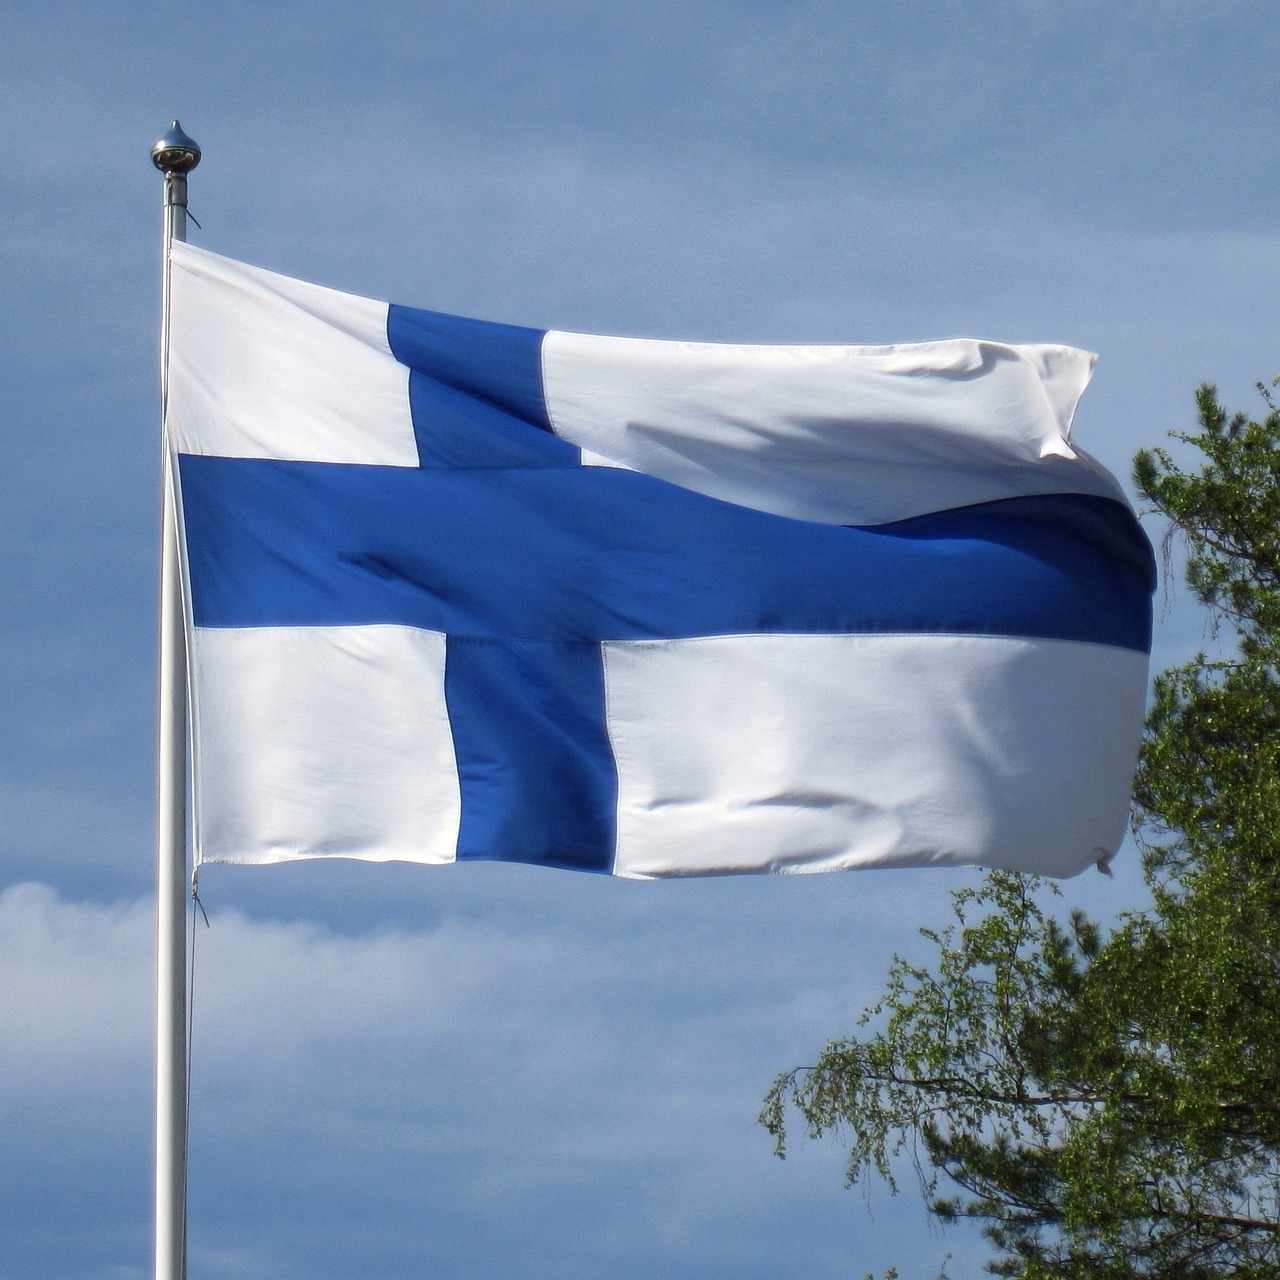 Suomen lippu liehuu tuulessa ja auringon paisteessa.